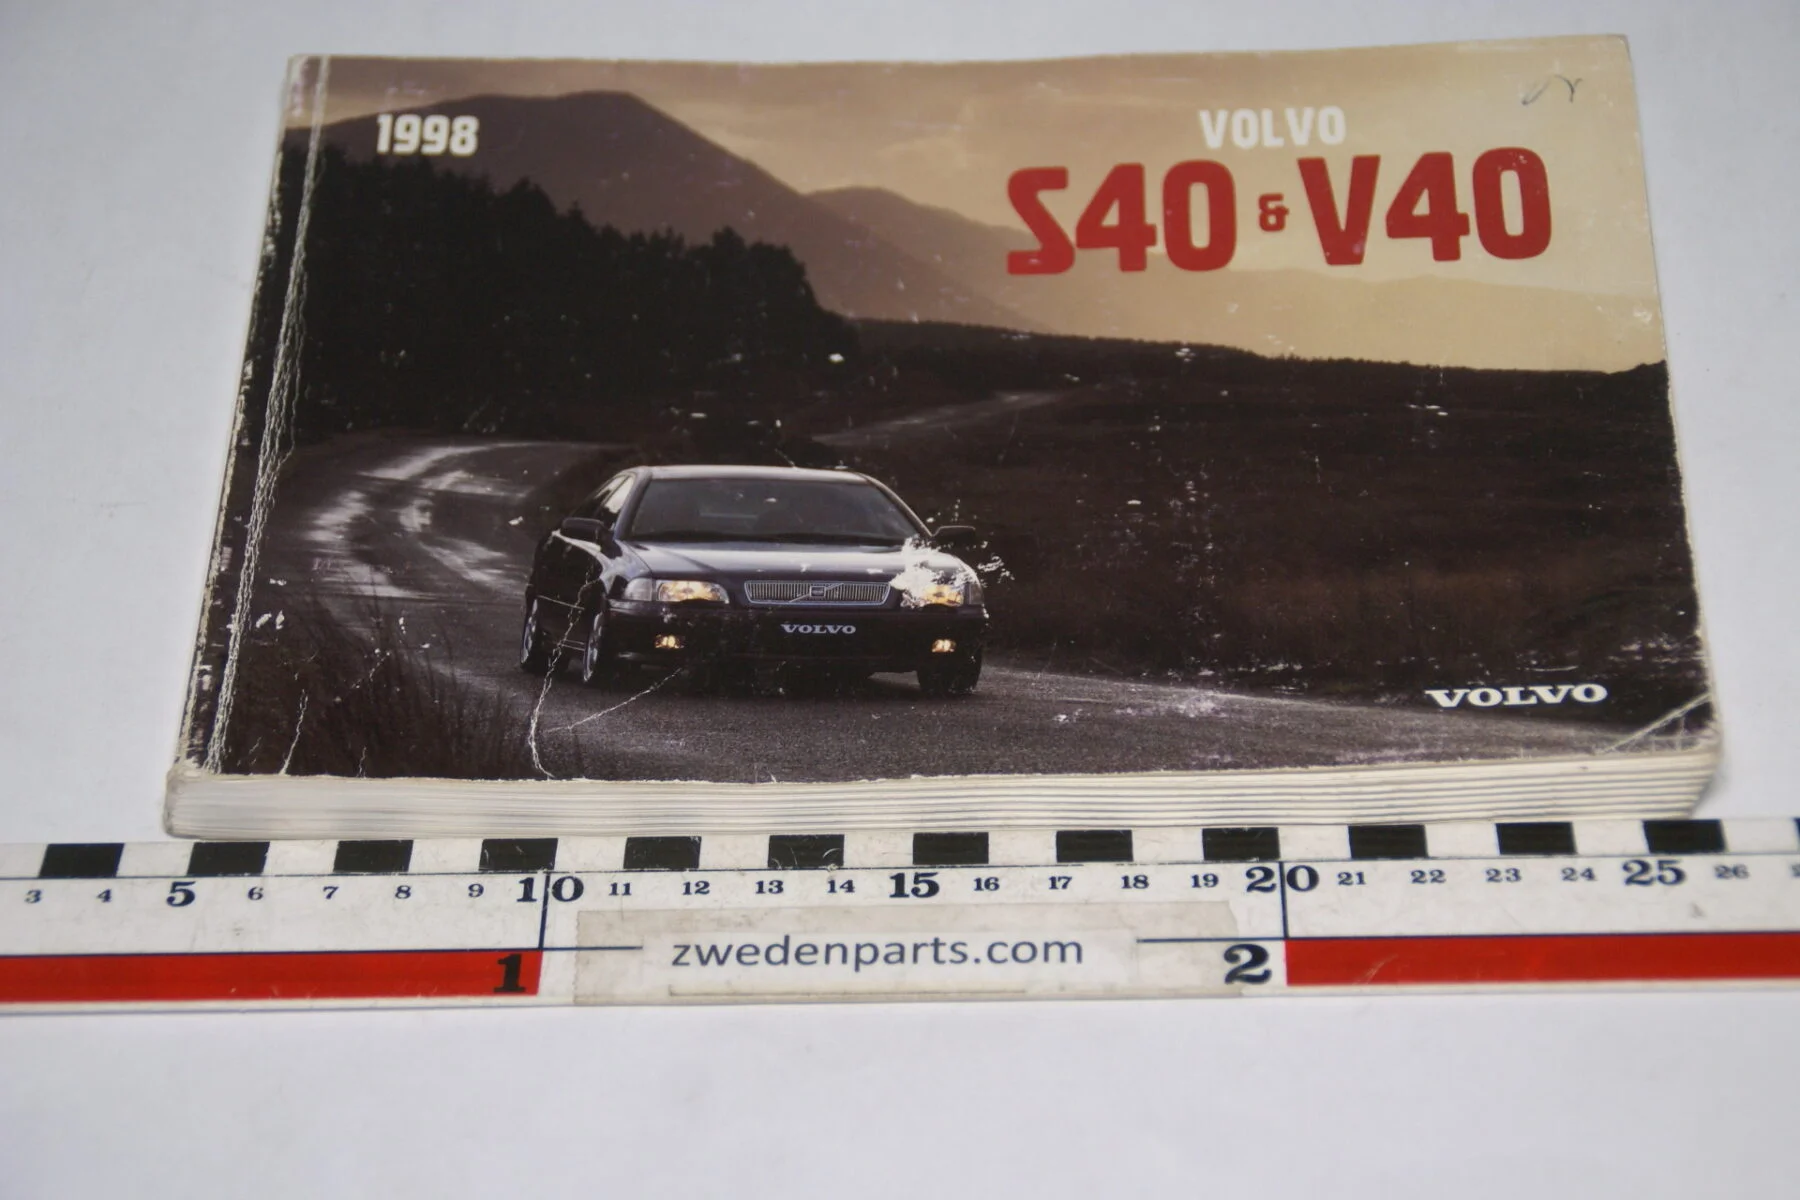 DSC07717 1997 originele instructieboekje Volvo S40 V40 nr TP 4162-1 Svensk-a904da39